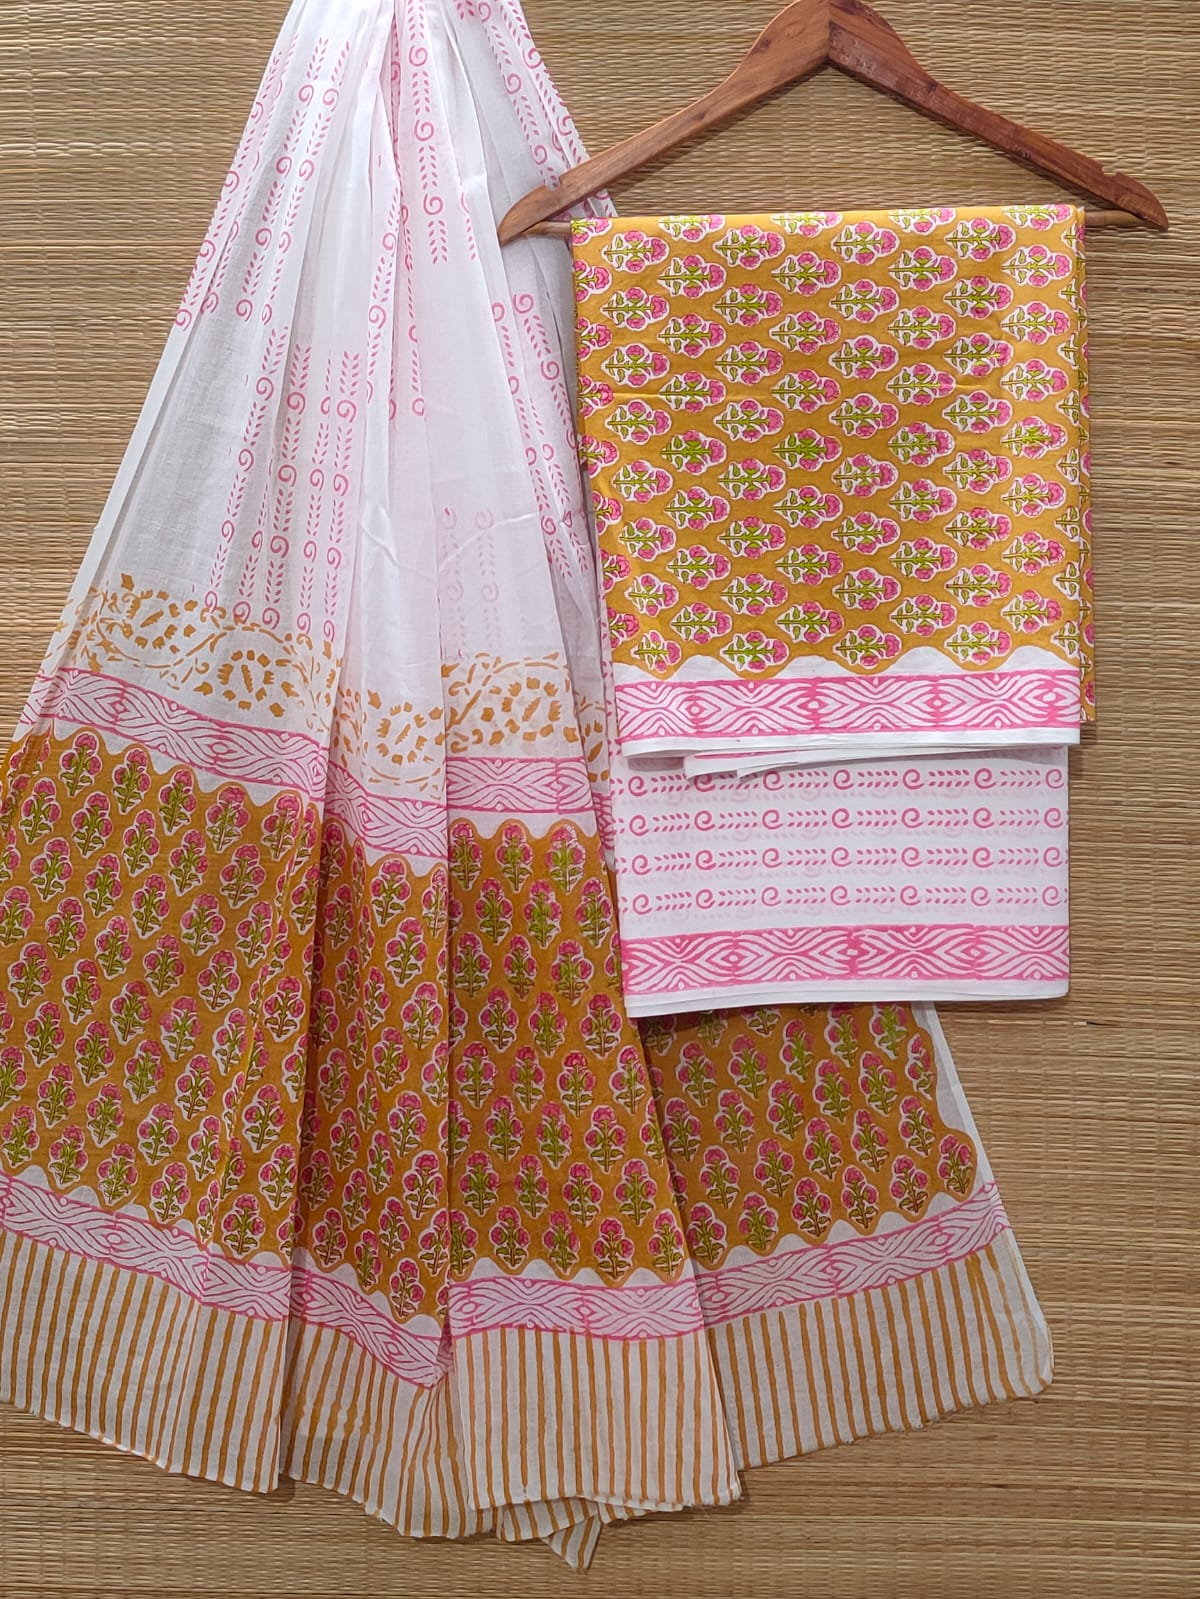 Hand Block Cotton Unstitched Salwar Suit With Cotton/Mulmul Dupatta - JBOCM142